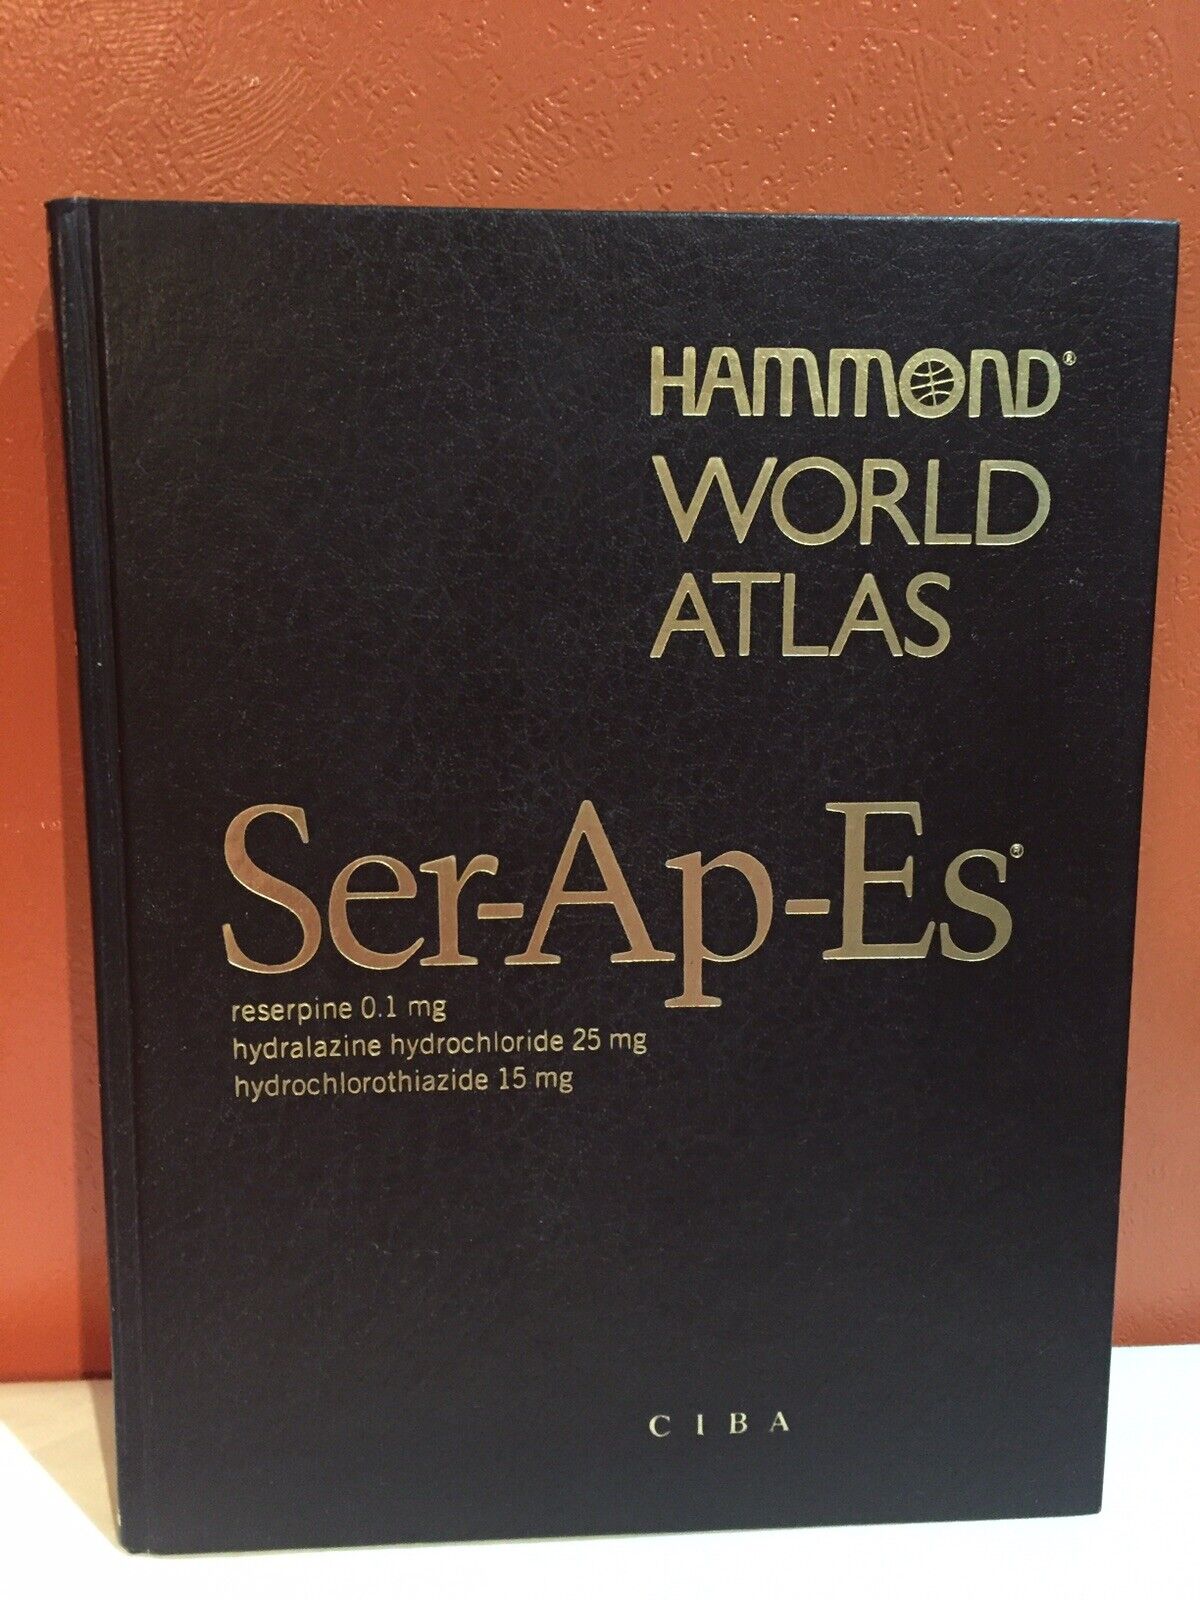 Hammond World Atlas Book SER-AP-ES Ciba - New Census Edition 1983 Vintage